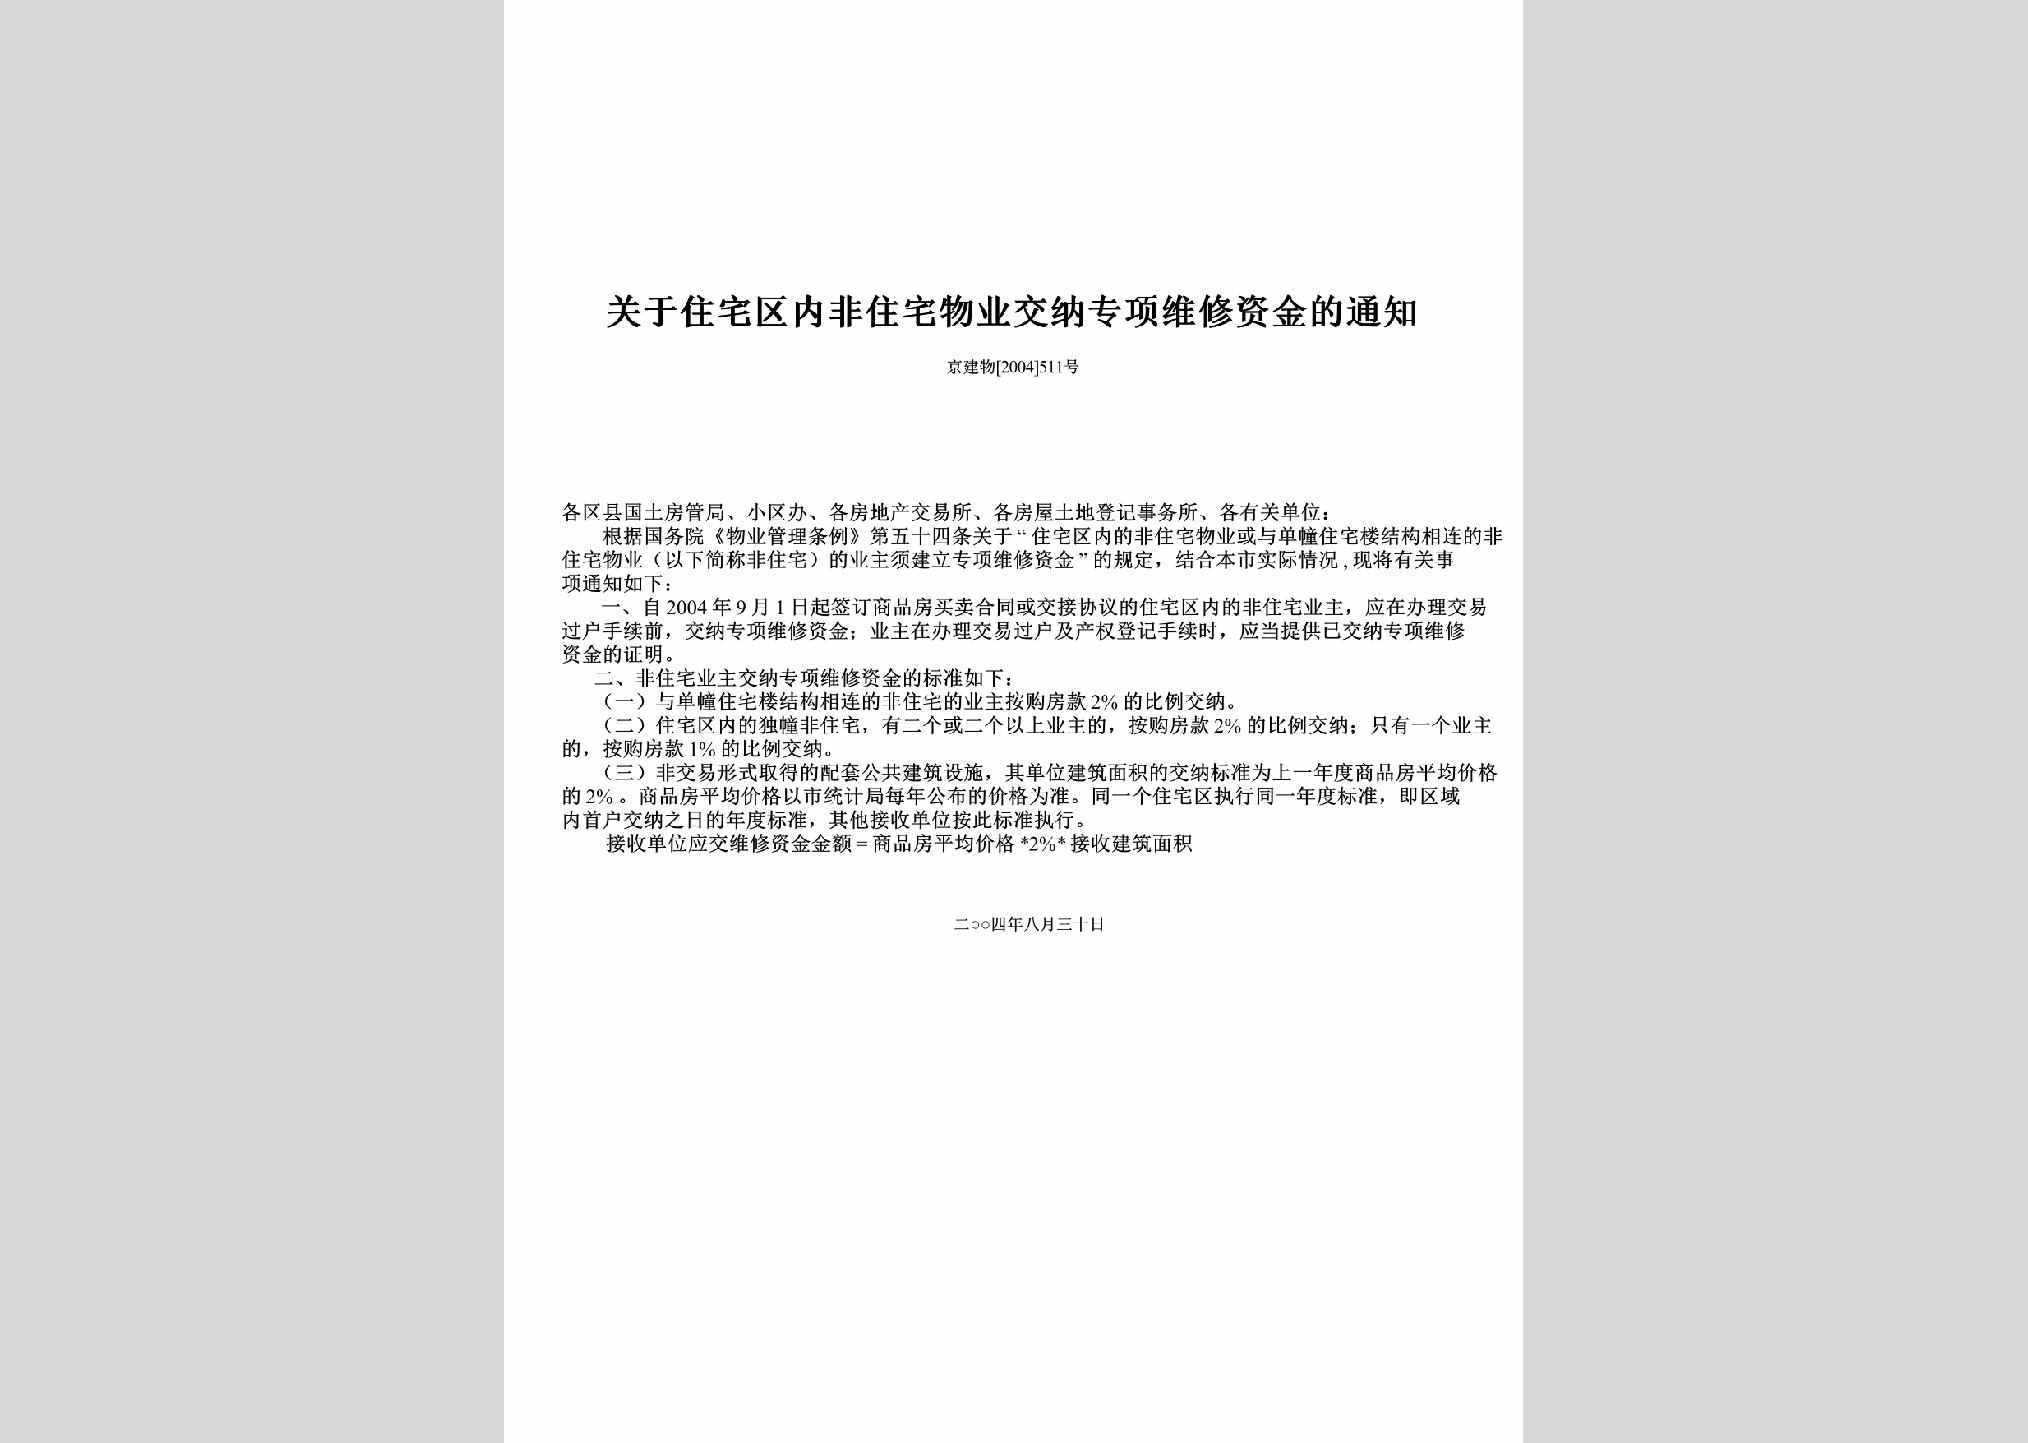 京建物[2004]511号：关于住宅区内非住宅物业交纳专项维修资金的通知